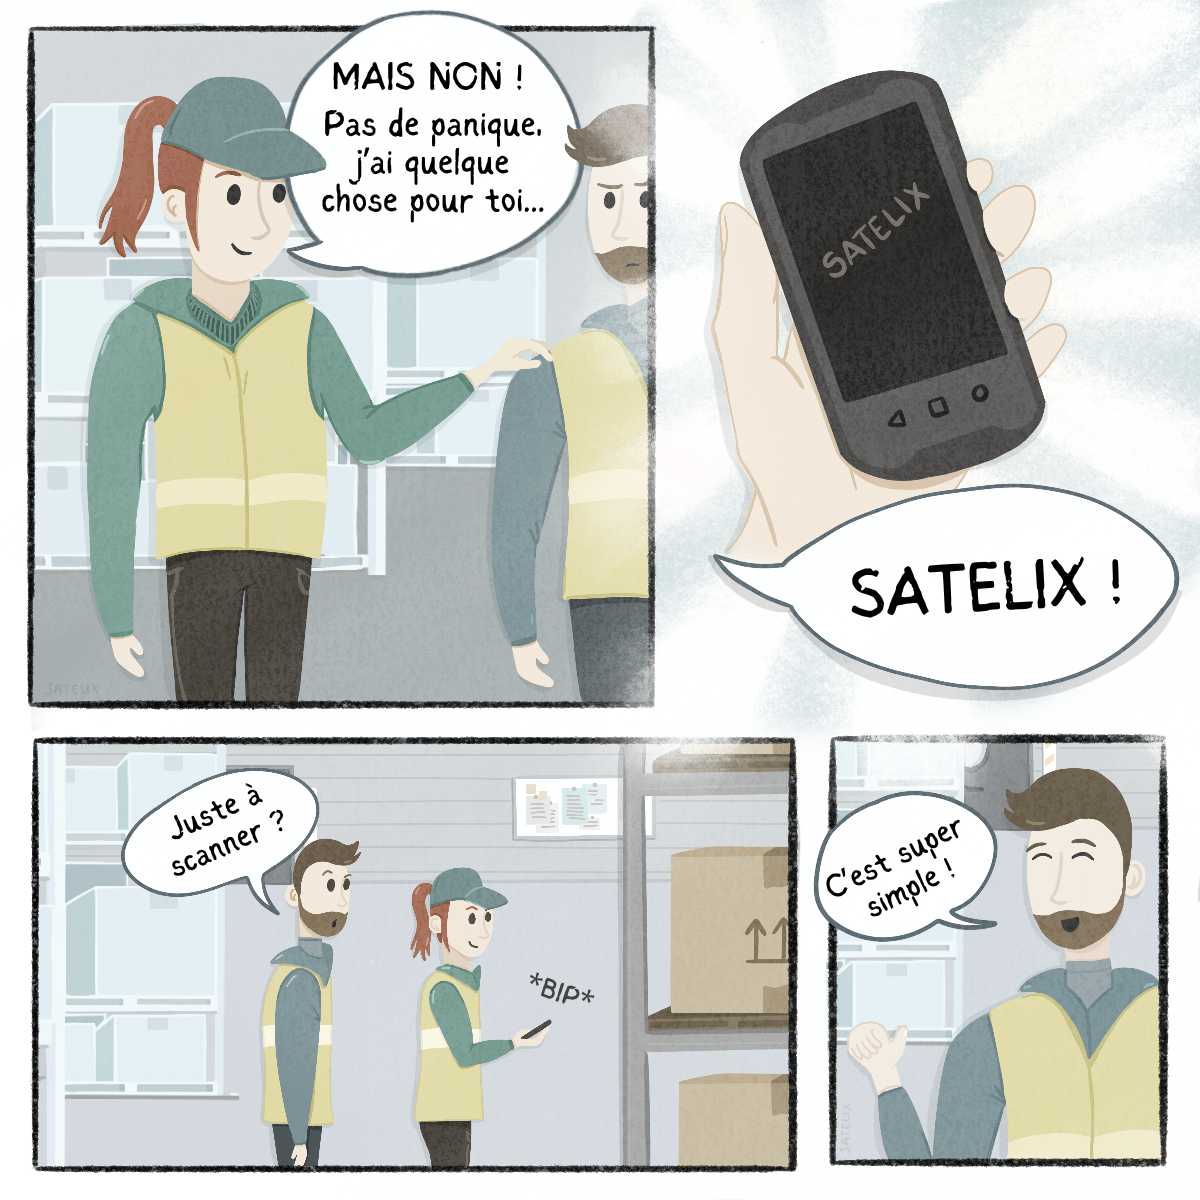 BD Satelix - Inventaires-2 - Satelix